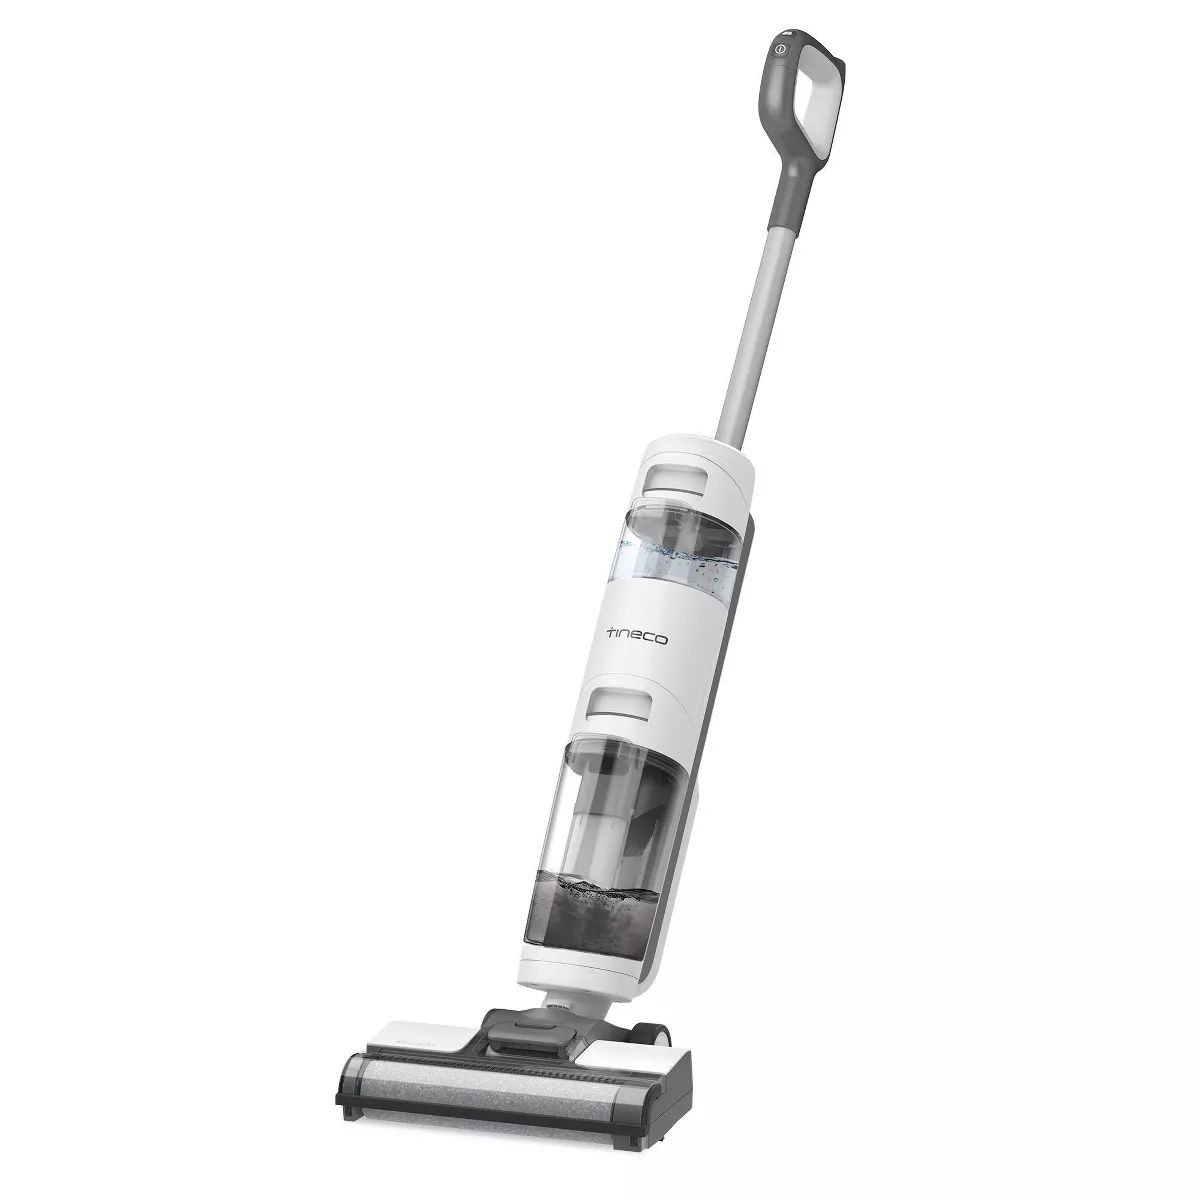 Tineco iFloor 3 Breeze Wet/Dry Hard Floor Cordless Vacuum Cleaner | Target